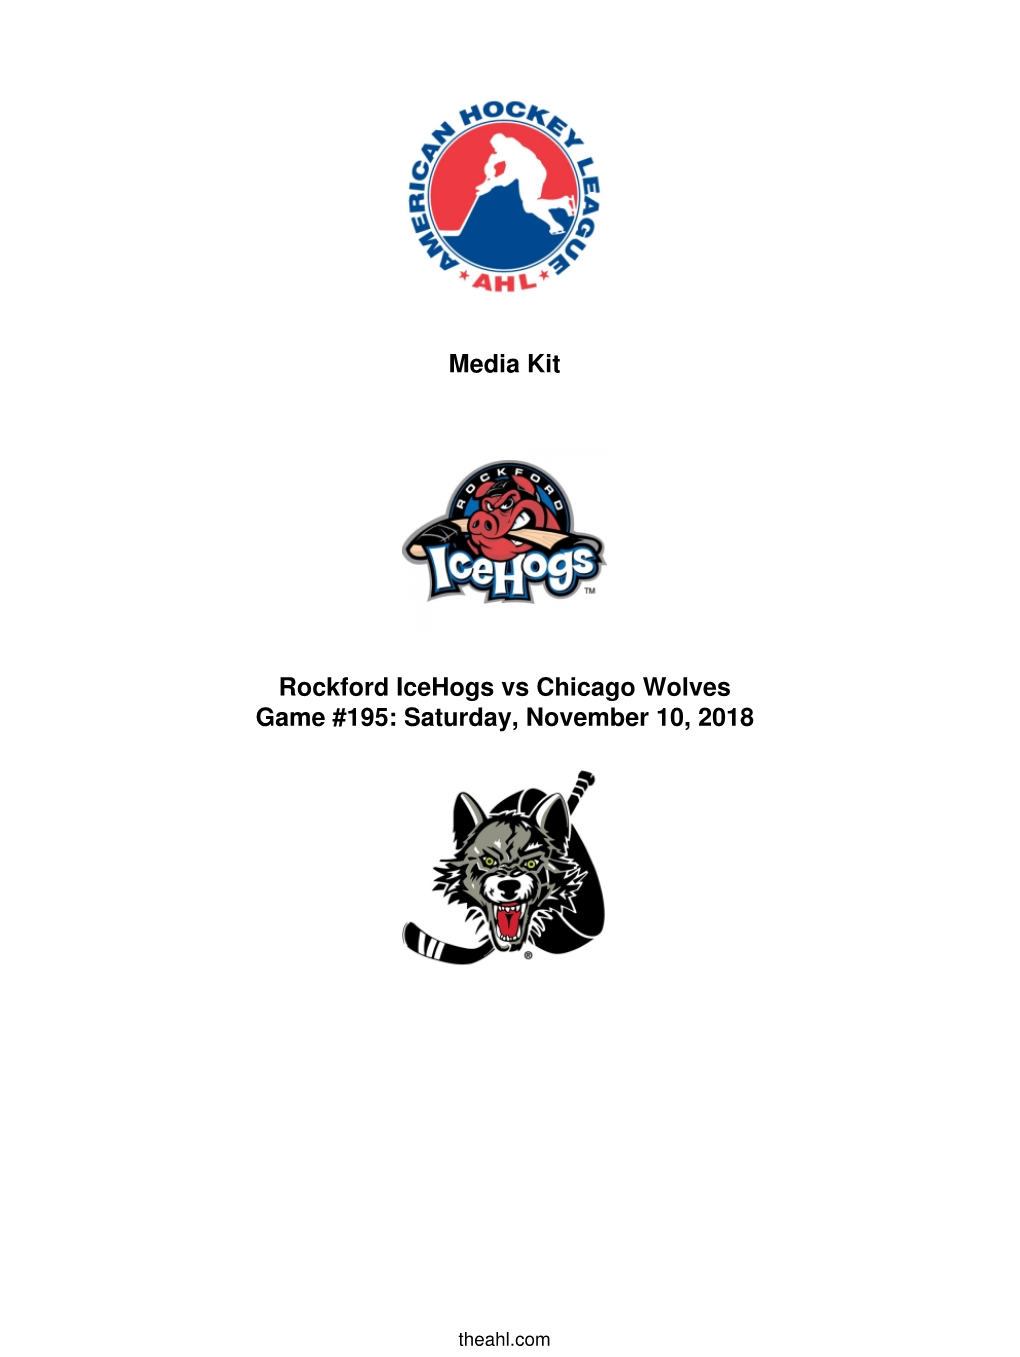 Media Kit Rockford Icehogs Vs Chicago Wolves Game #195